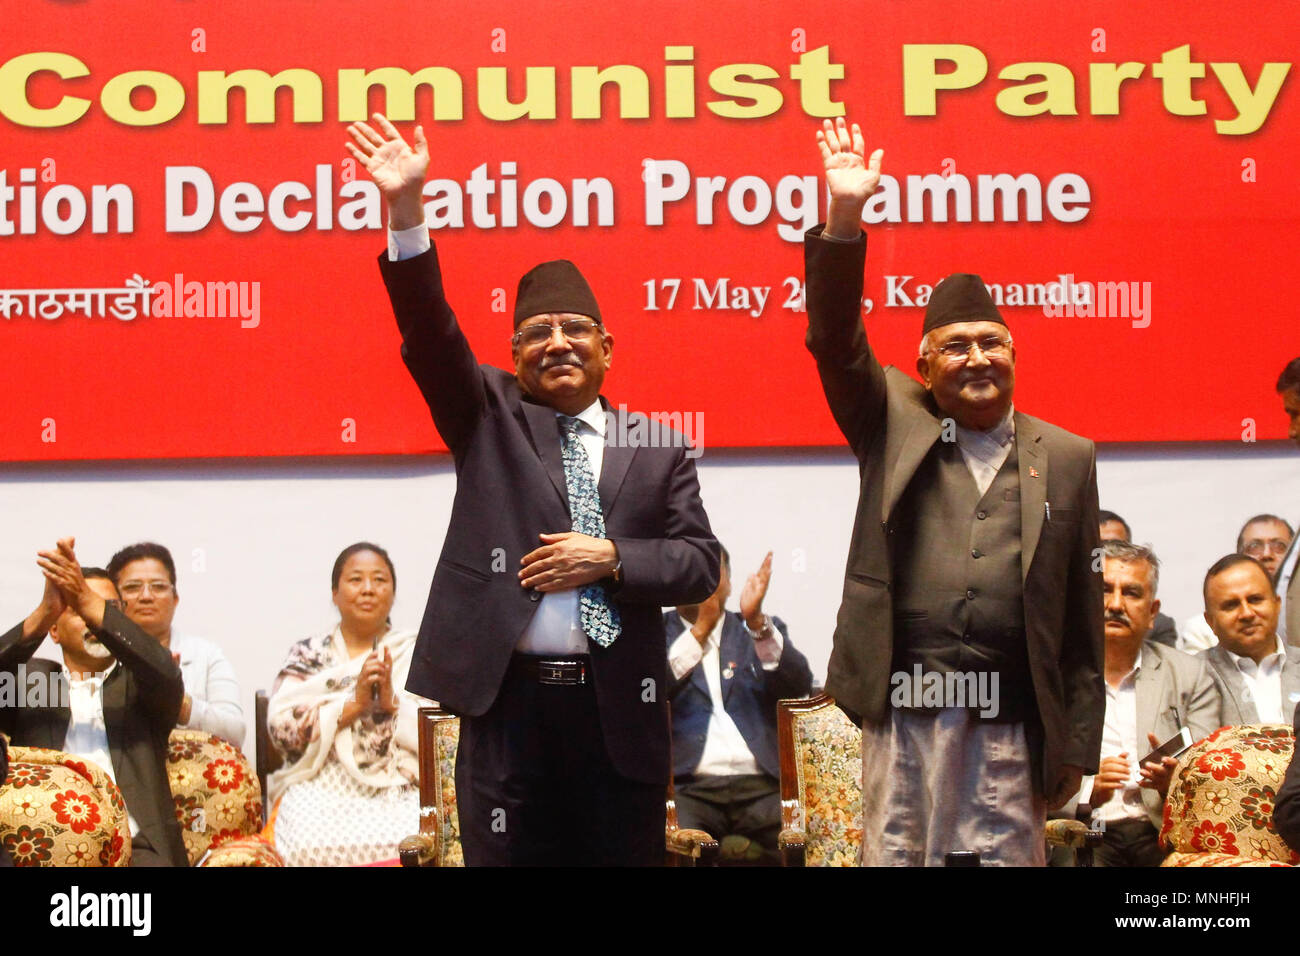 RÃ©sultat de recherche d'images pour "Le Premier ministre du NÃ©pal, Khadga Prasad Sharma Oli, coprÃ©sident du Parti communiste nÃ©palais, Images"